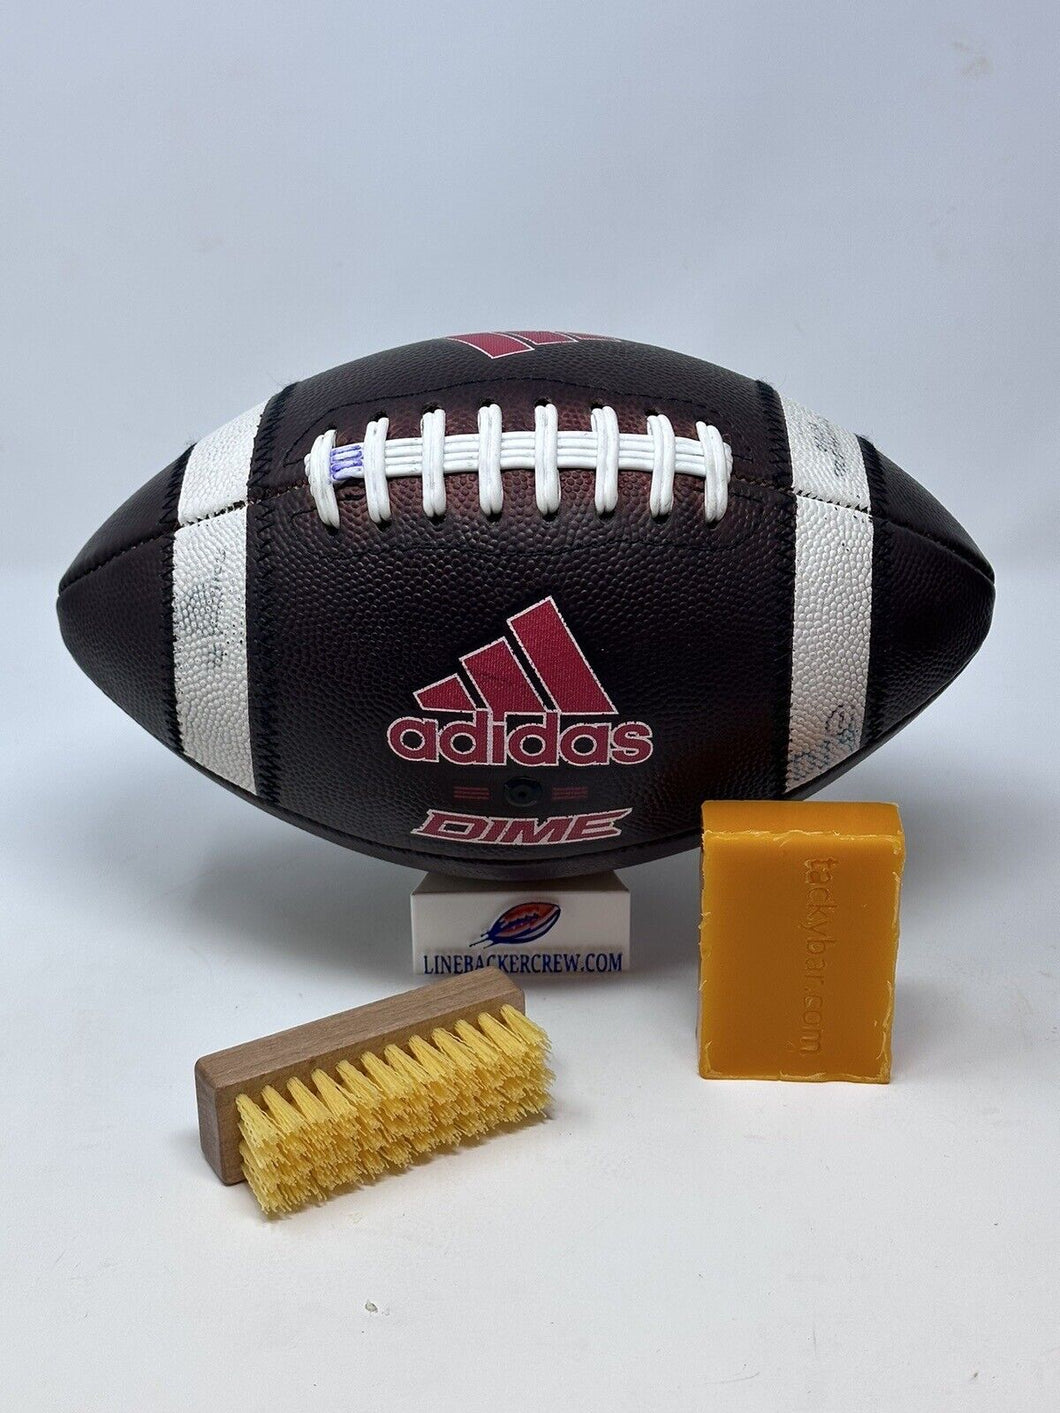 Tackybar Football Tack Bar + Brush Kit - Game Prepped Leather Footballs NFL NCAA